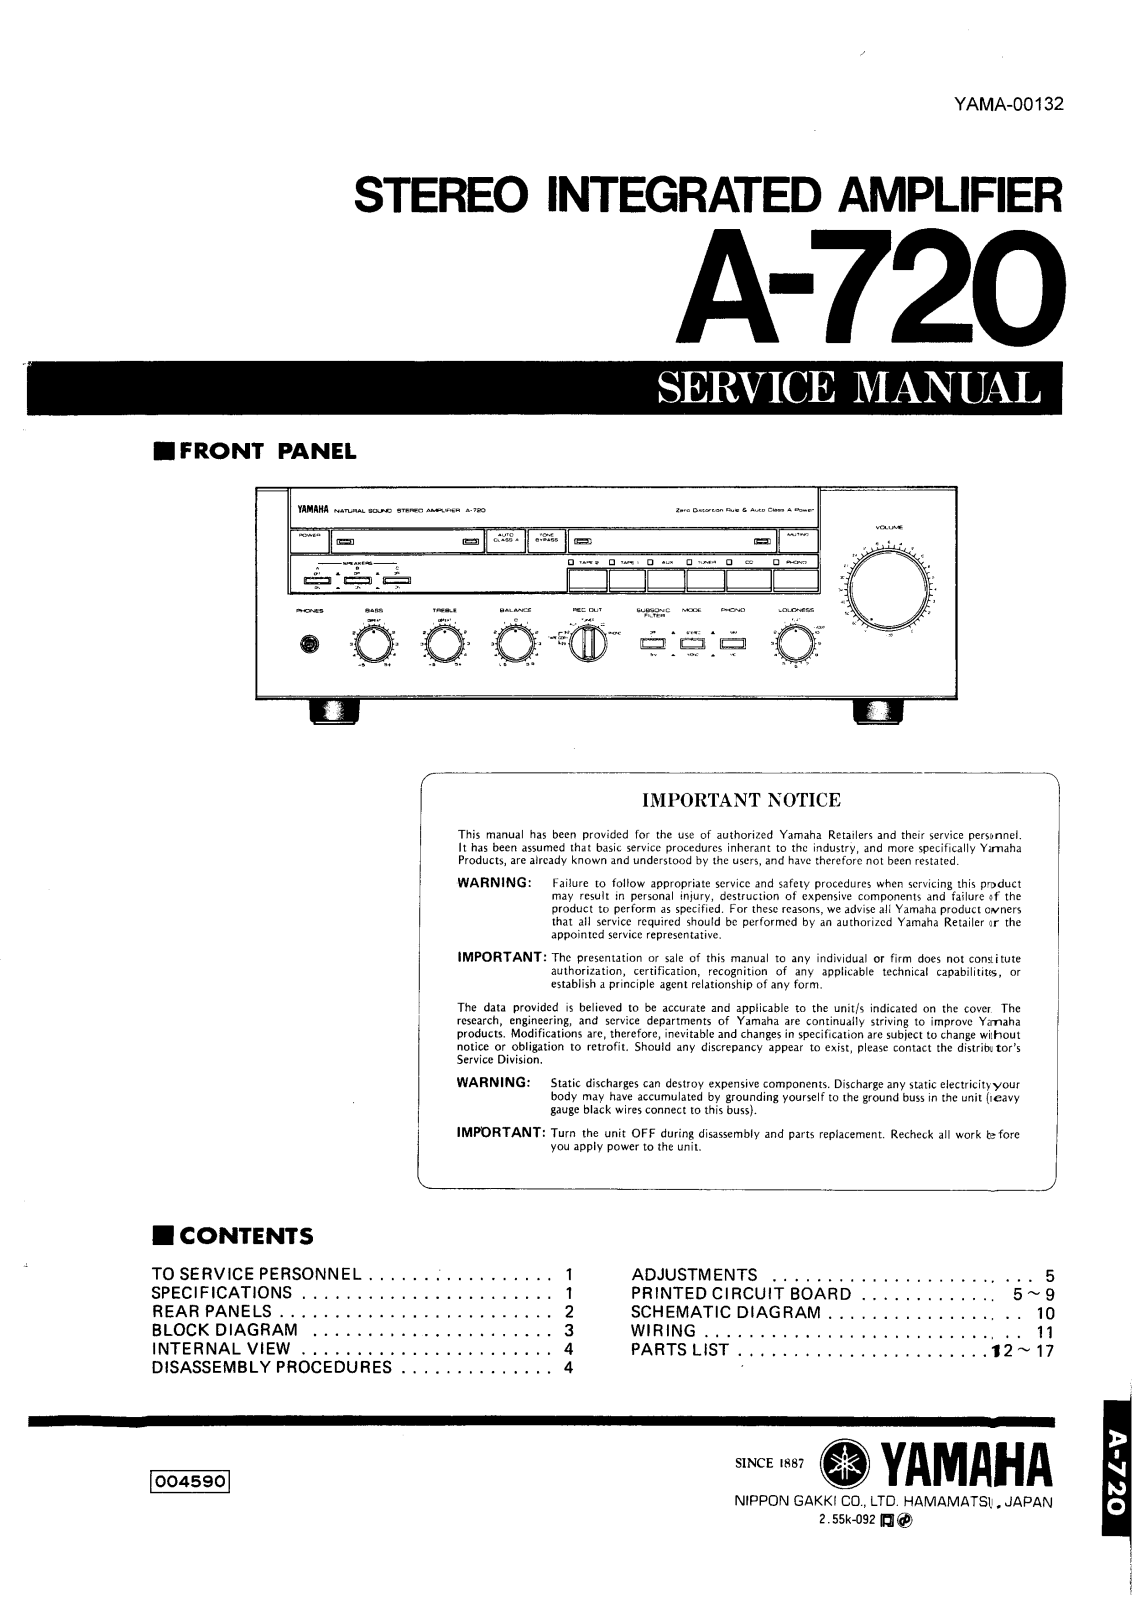 Yamaha A-720 Service manual